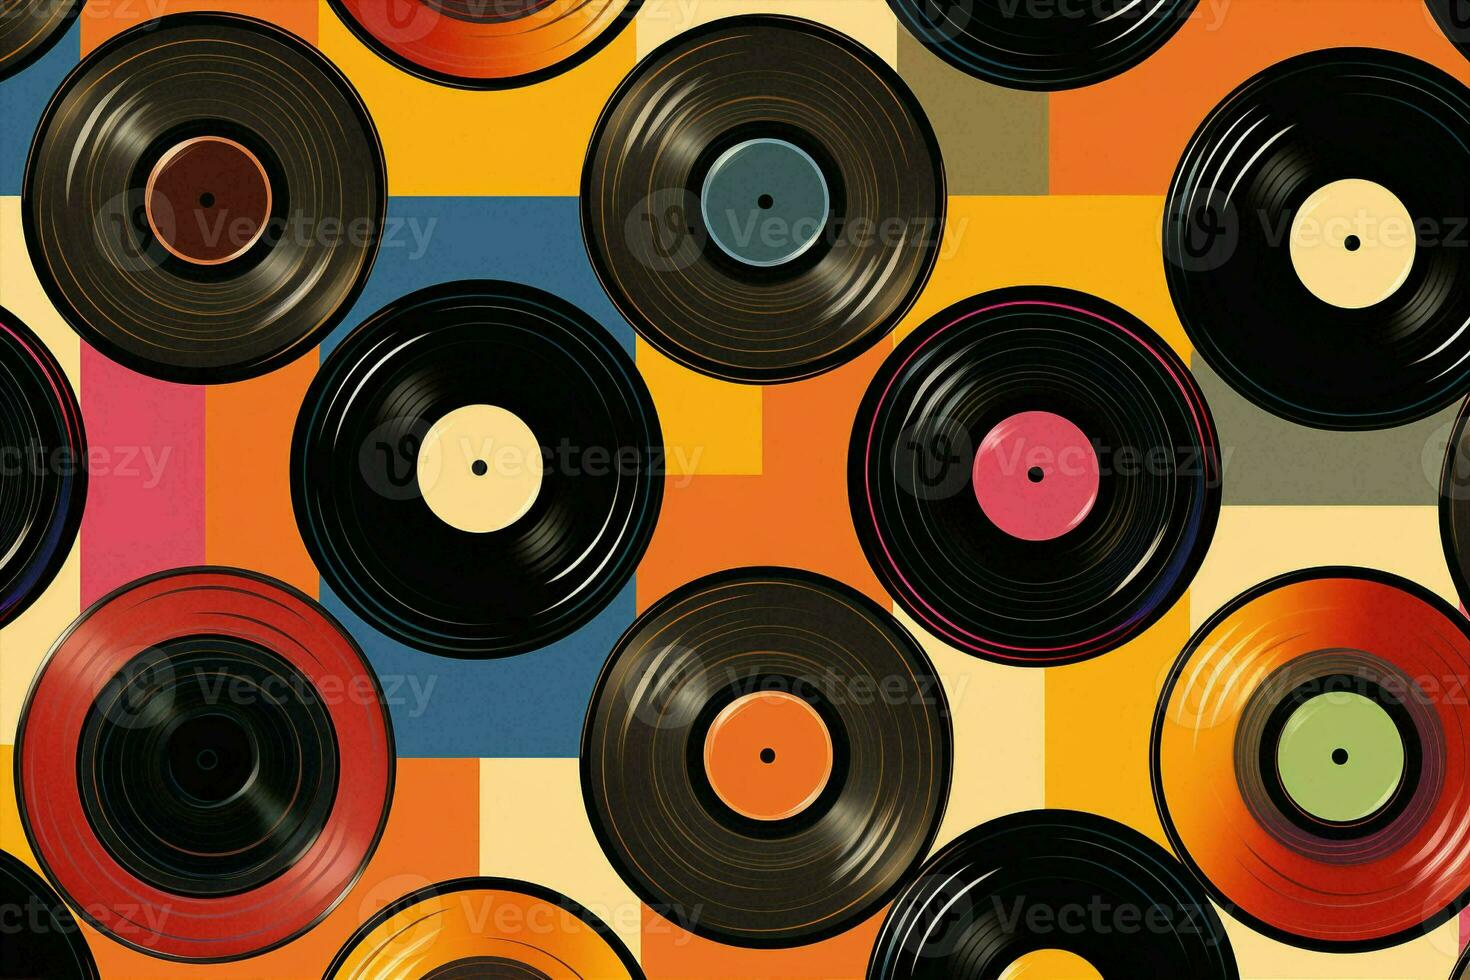 geluid ontwerp vinyl partij Vermelding wijnoogst retro structuur musical patroon naadloos disco foto